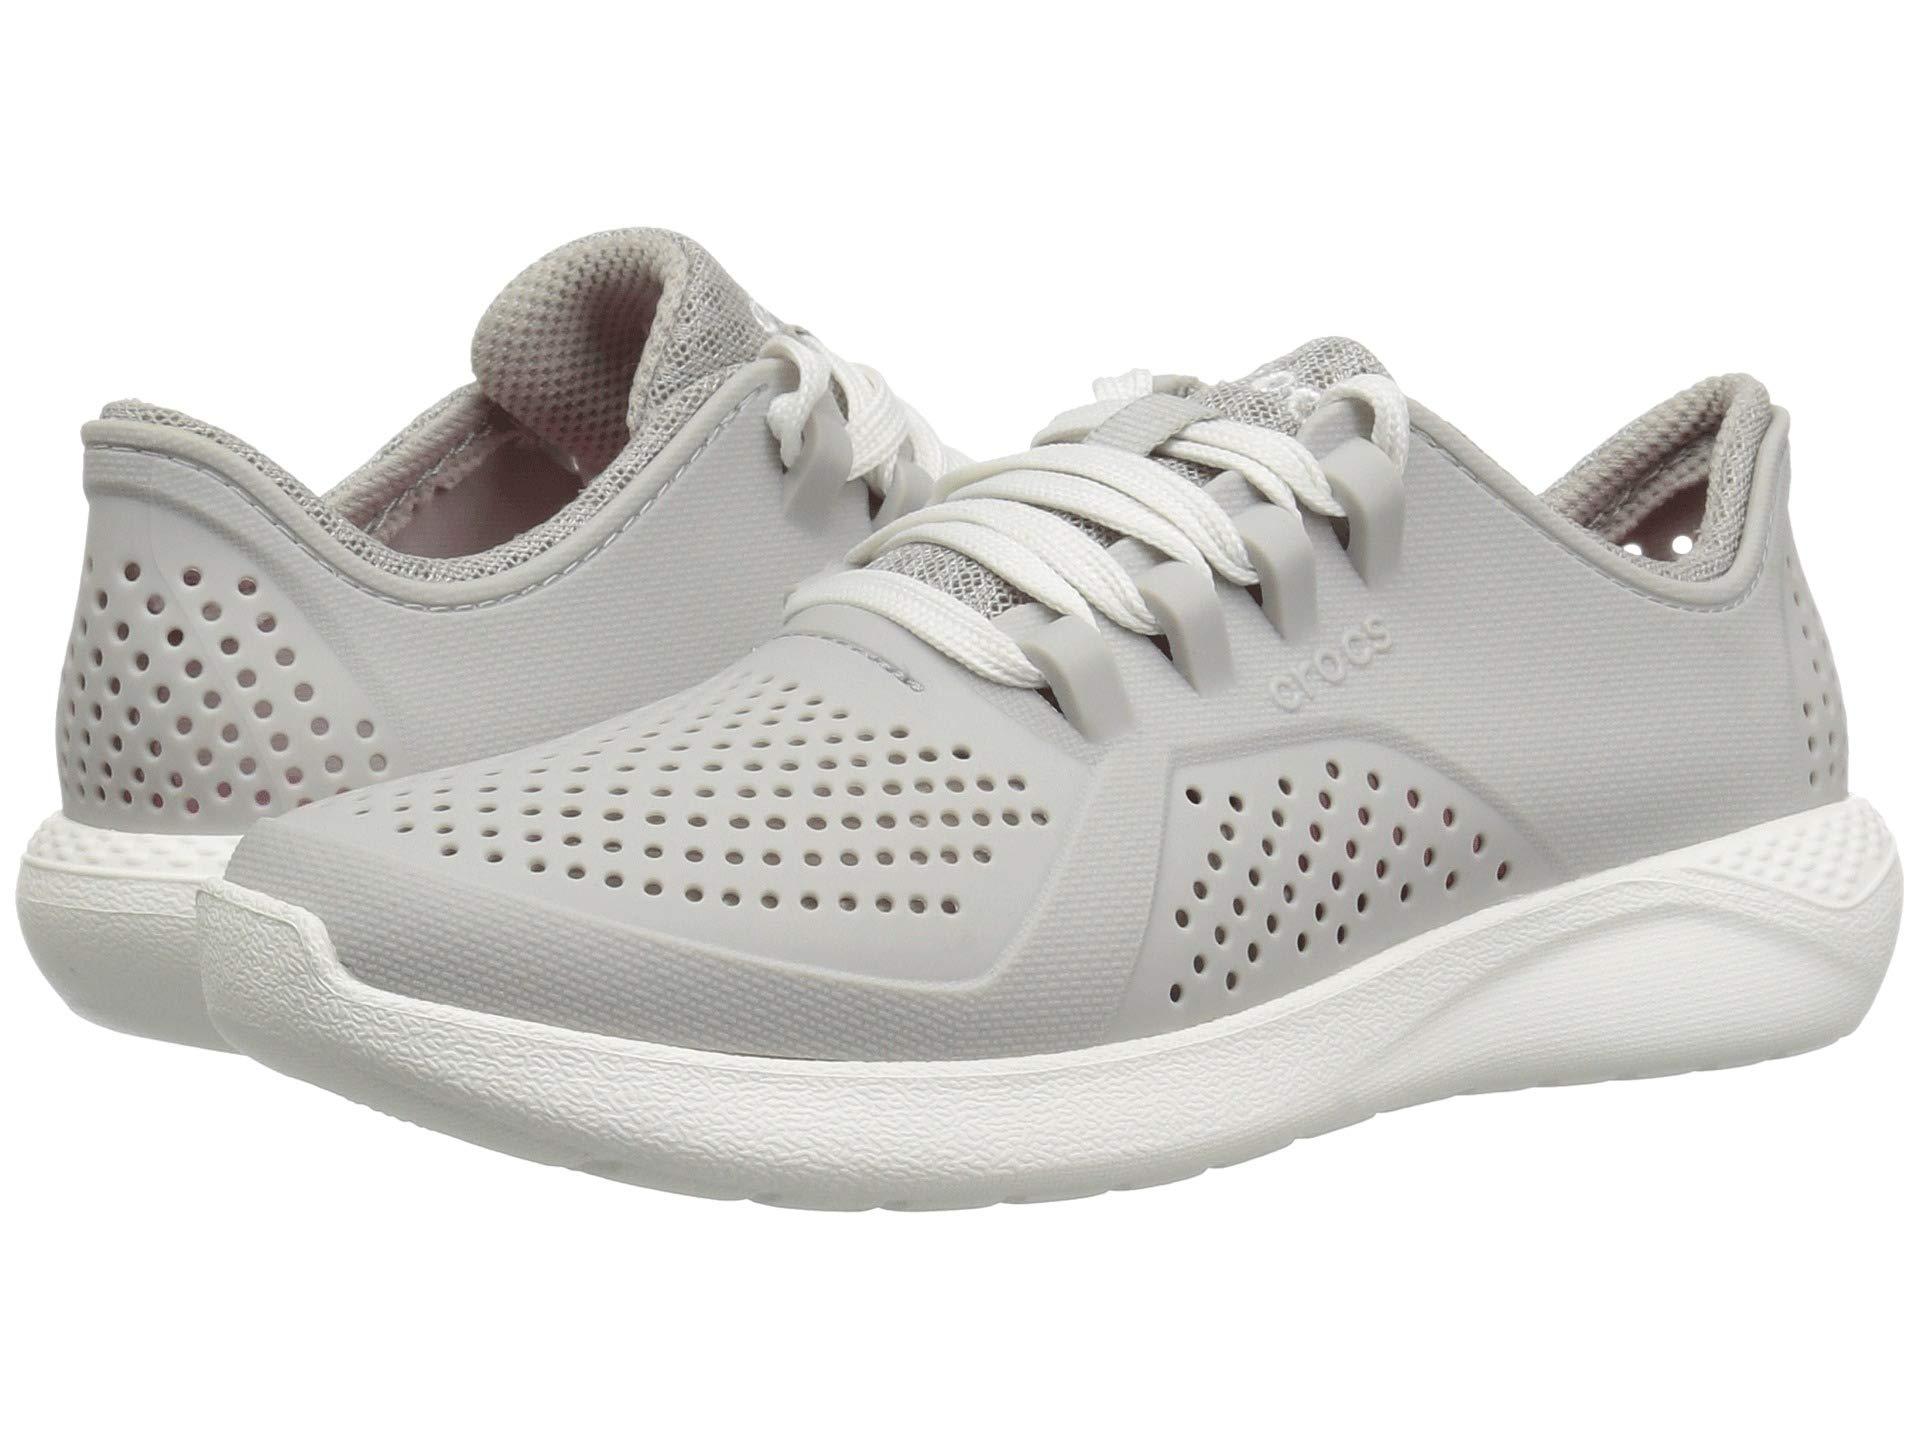  Crocs   Literidepacerw Low top Sneakers  in Pearl White 